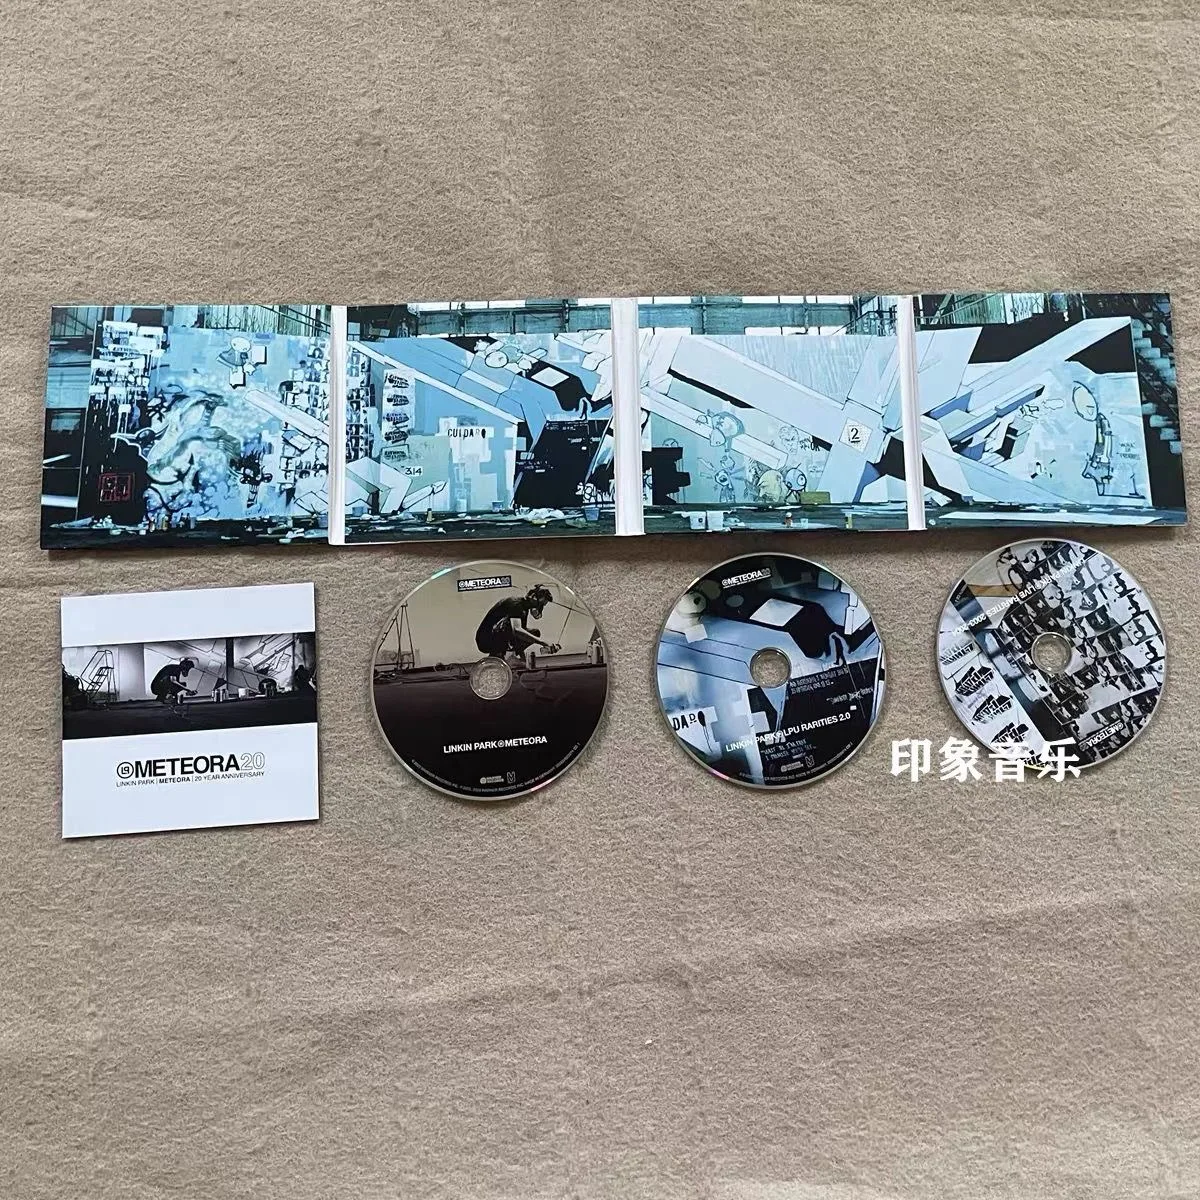 Ретро Музыкальный CD Linkin Park Meteora 20th Anniversary Edition Альбом Компакт-Диск Косплей 3шт CD Walkman Car Play Песни Подарки Реквизит - 4